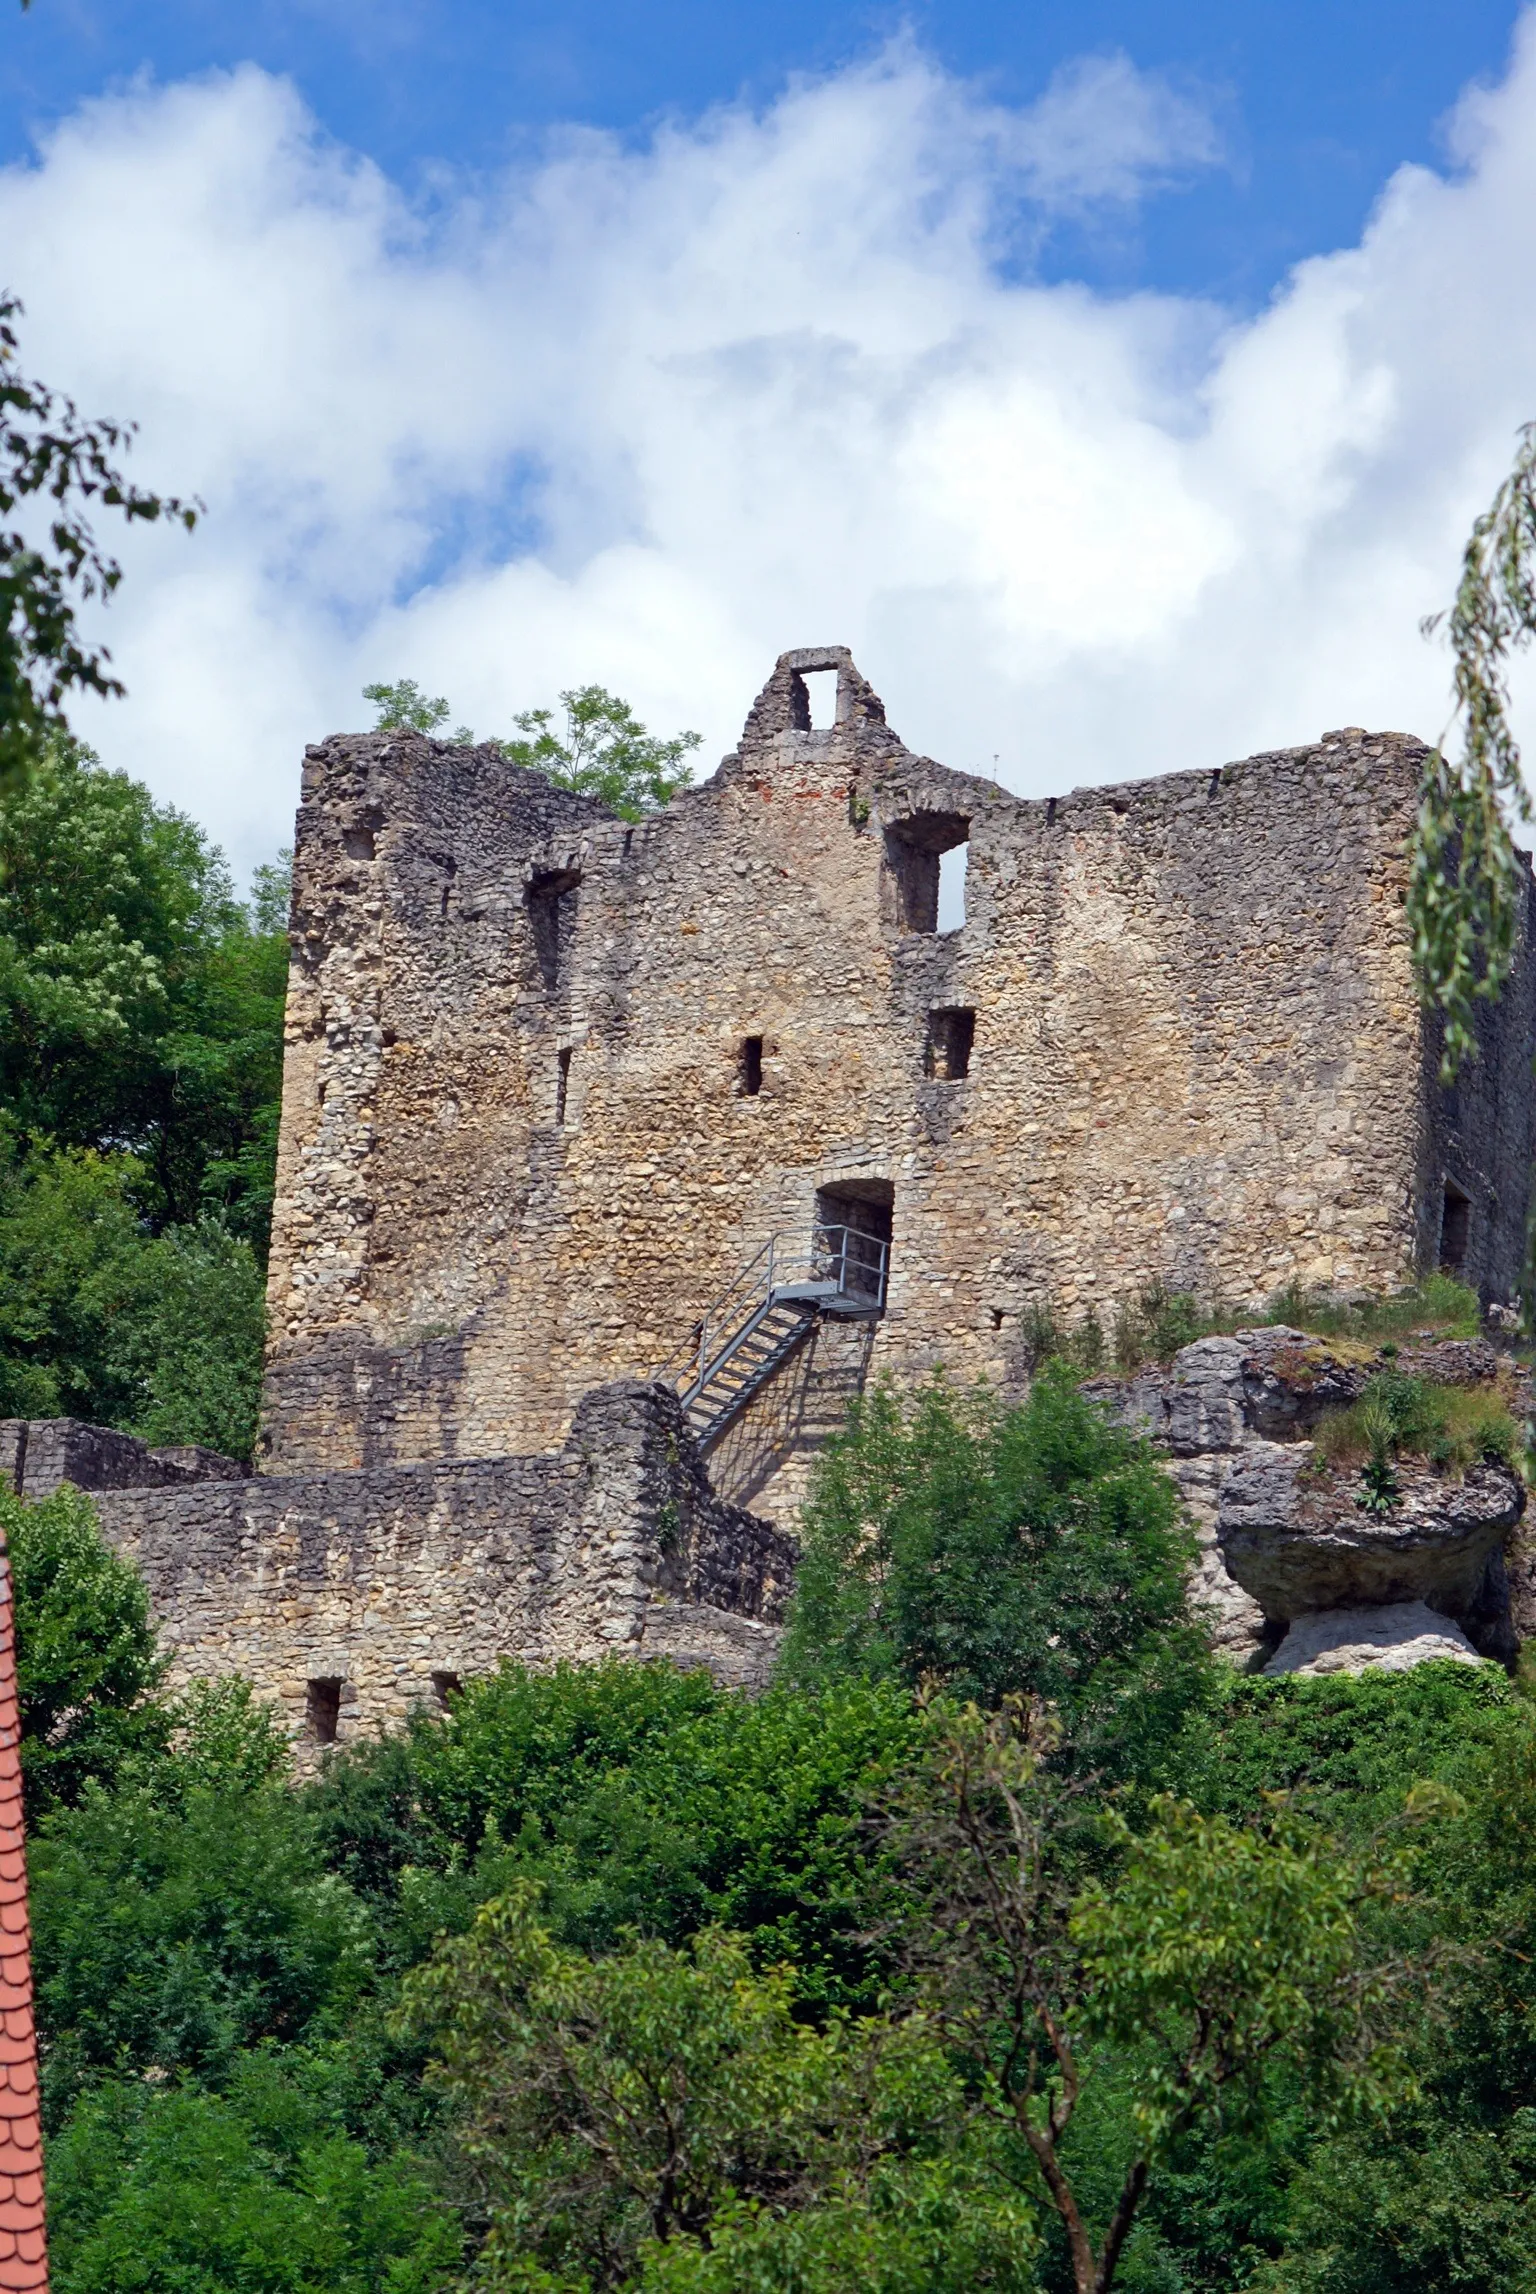 Photo showing: Die Burg wurde um 1250 von dem Gundelfinger Swigger IV oder vom späteren württenbergischen Landrichter Konrad II gebaut. Um 1300 wurde die Anlage erweitert und verstärkt. Dabei wurde der Turm niedergelegt und eine massive Schildmauer gebaut die Vorburg und Kernburg voneinander trennte. Im 16 Jhd wurde die Anlage noch einmal umgebaut und auch eine Ringmauer oder Zwingermauer errichte. 1545 geht die Burg in den Besitz von Wolf von Vellberg zu Vellberg über und wird seit dieser Zeit dem Verfall überlassen. 1973 übernimmt der Landkreis Reutlingen die Anlage und beginnt mit umfangreiche Sanierungs- und Bestandssicherungsmaßnahmen.

Die Burg liegt im Lautertal südlich von Münsingen und ist das ganze Jahr über frei zugänglich.